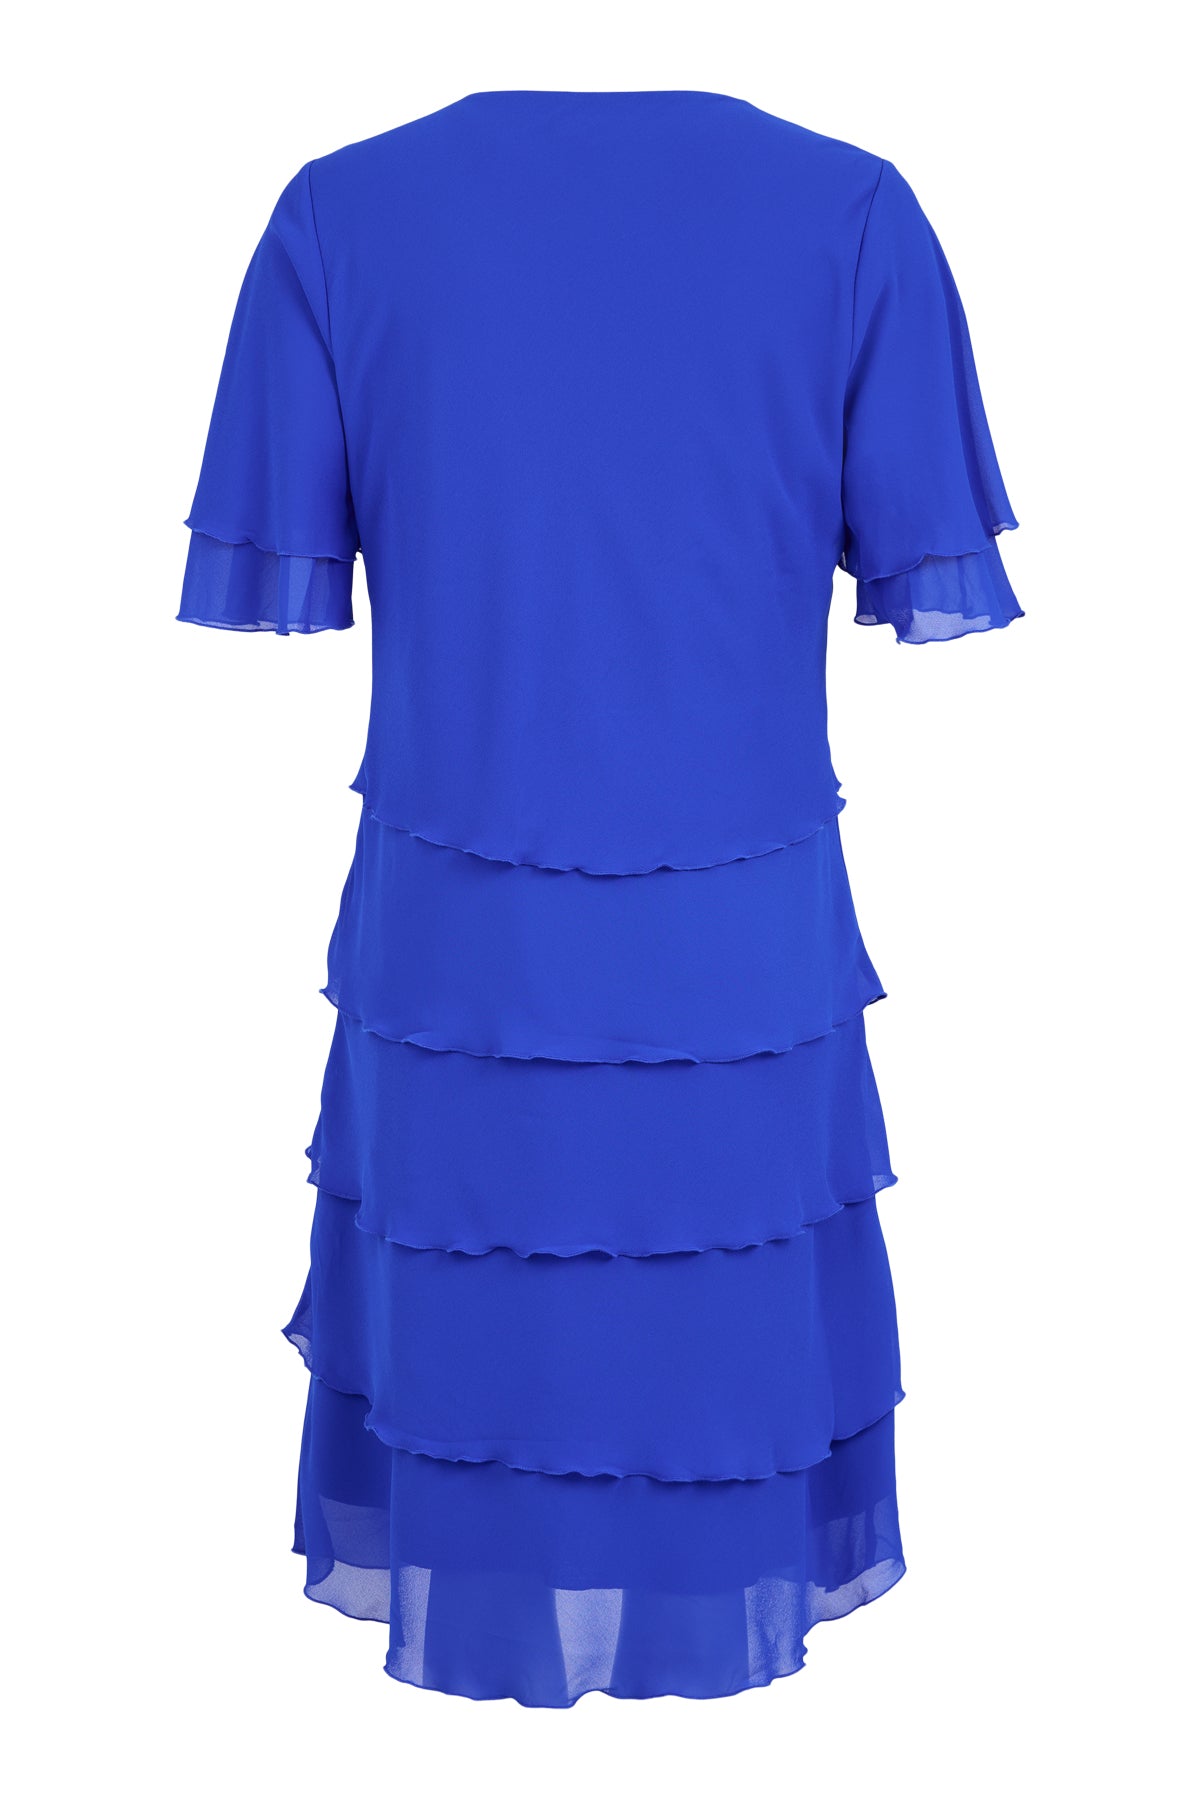 Sunday Blue Layered Dress